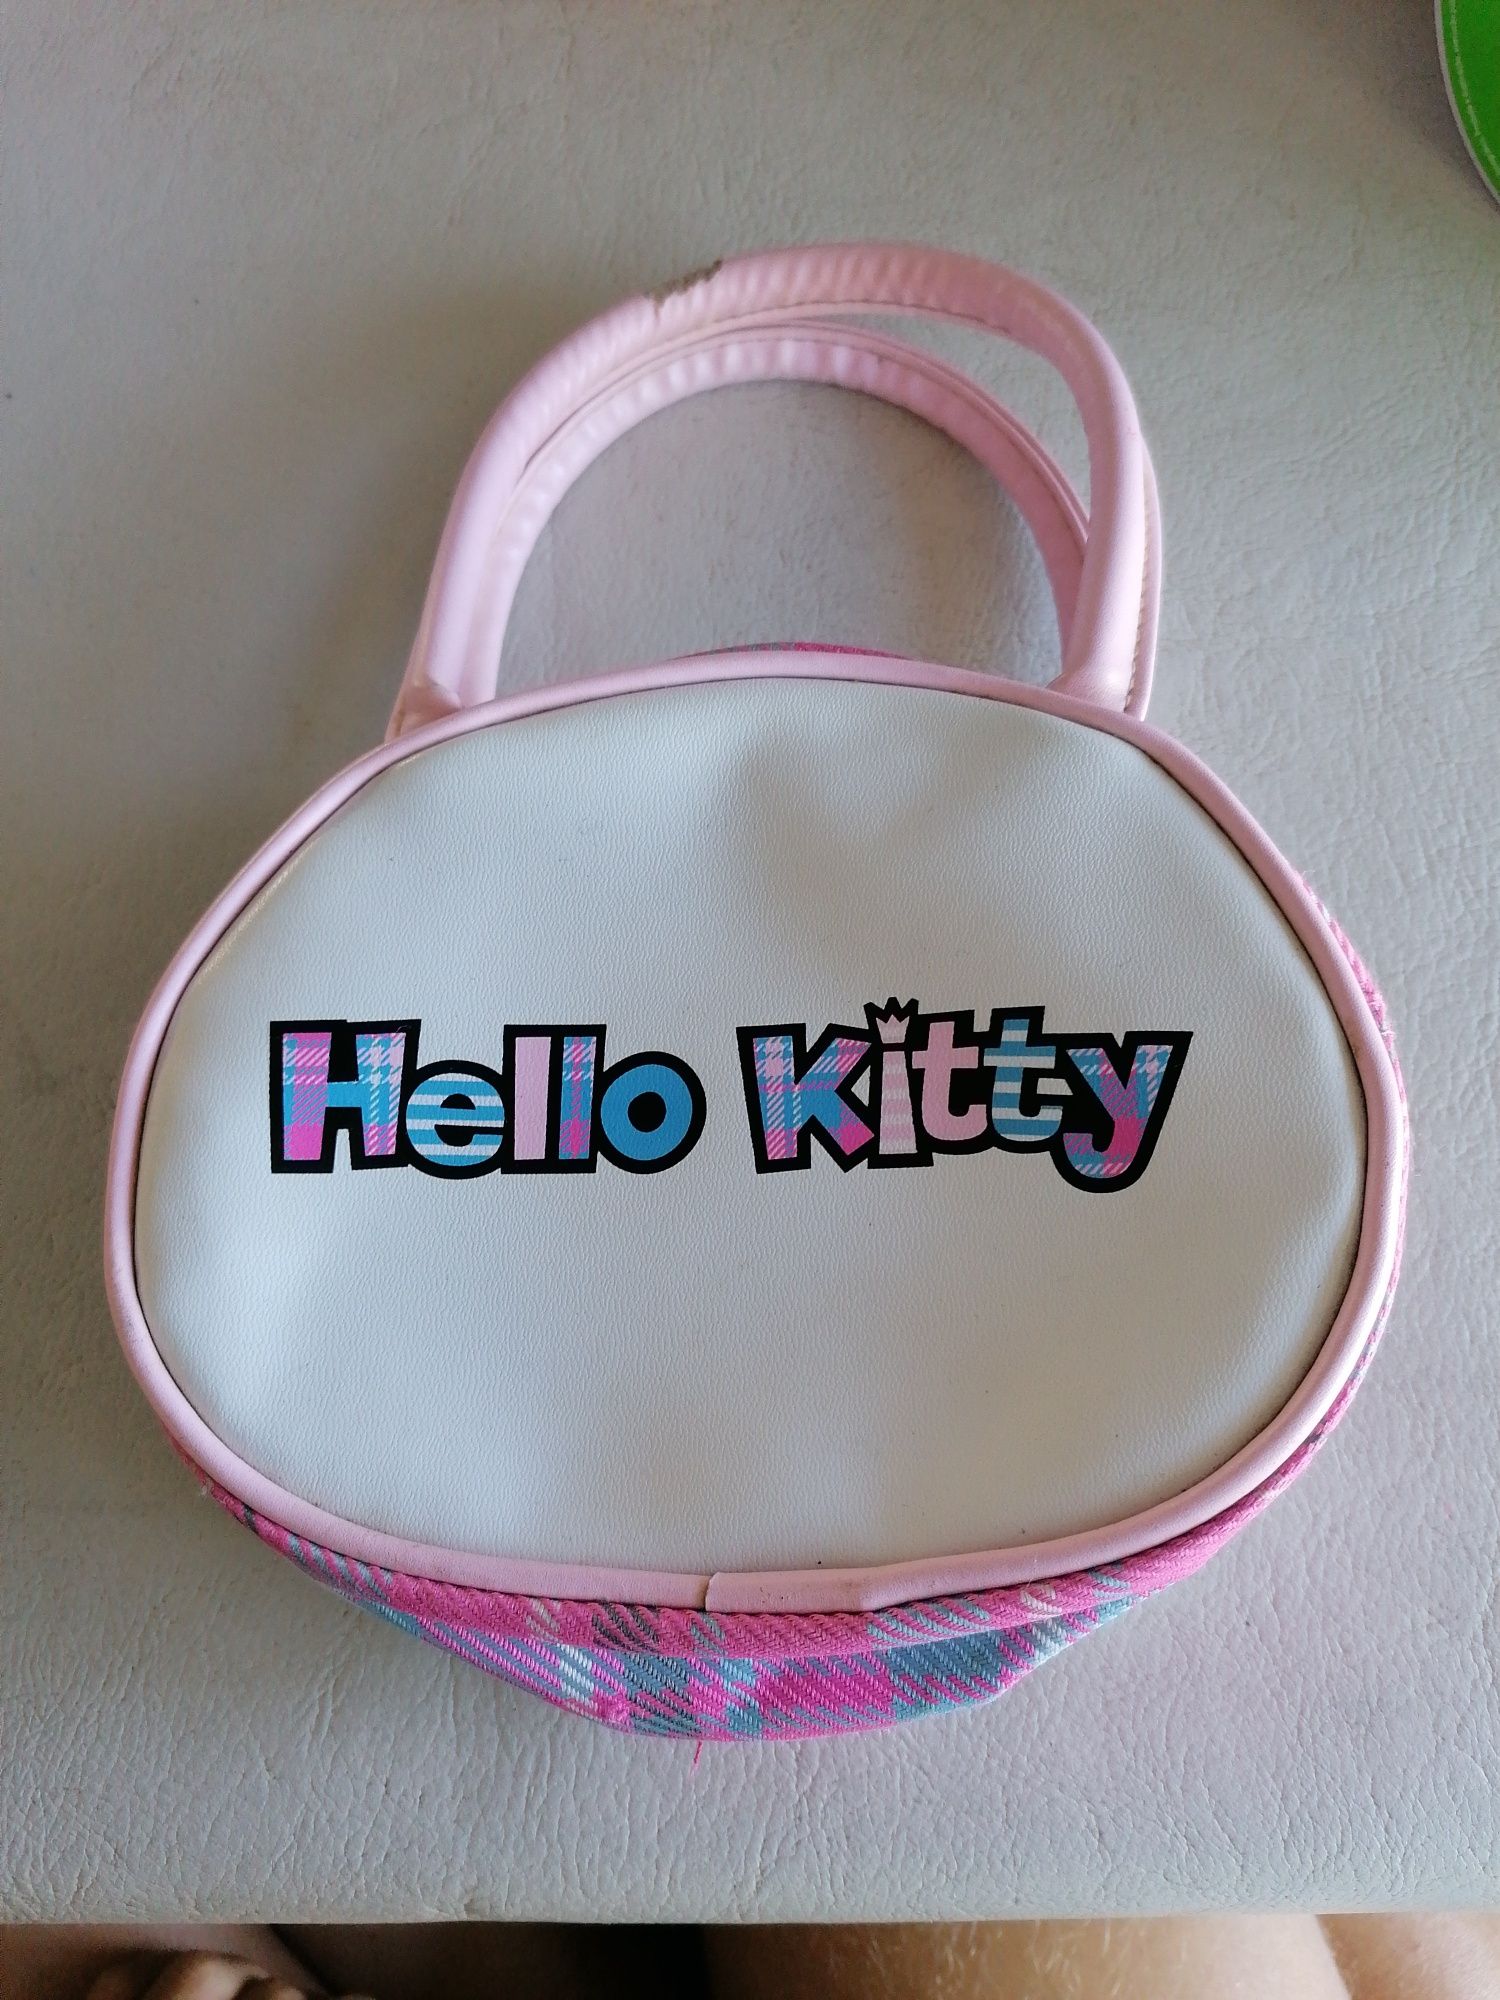 Bolsa da Hello Kitty